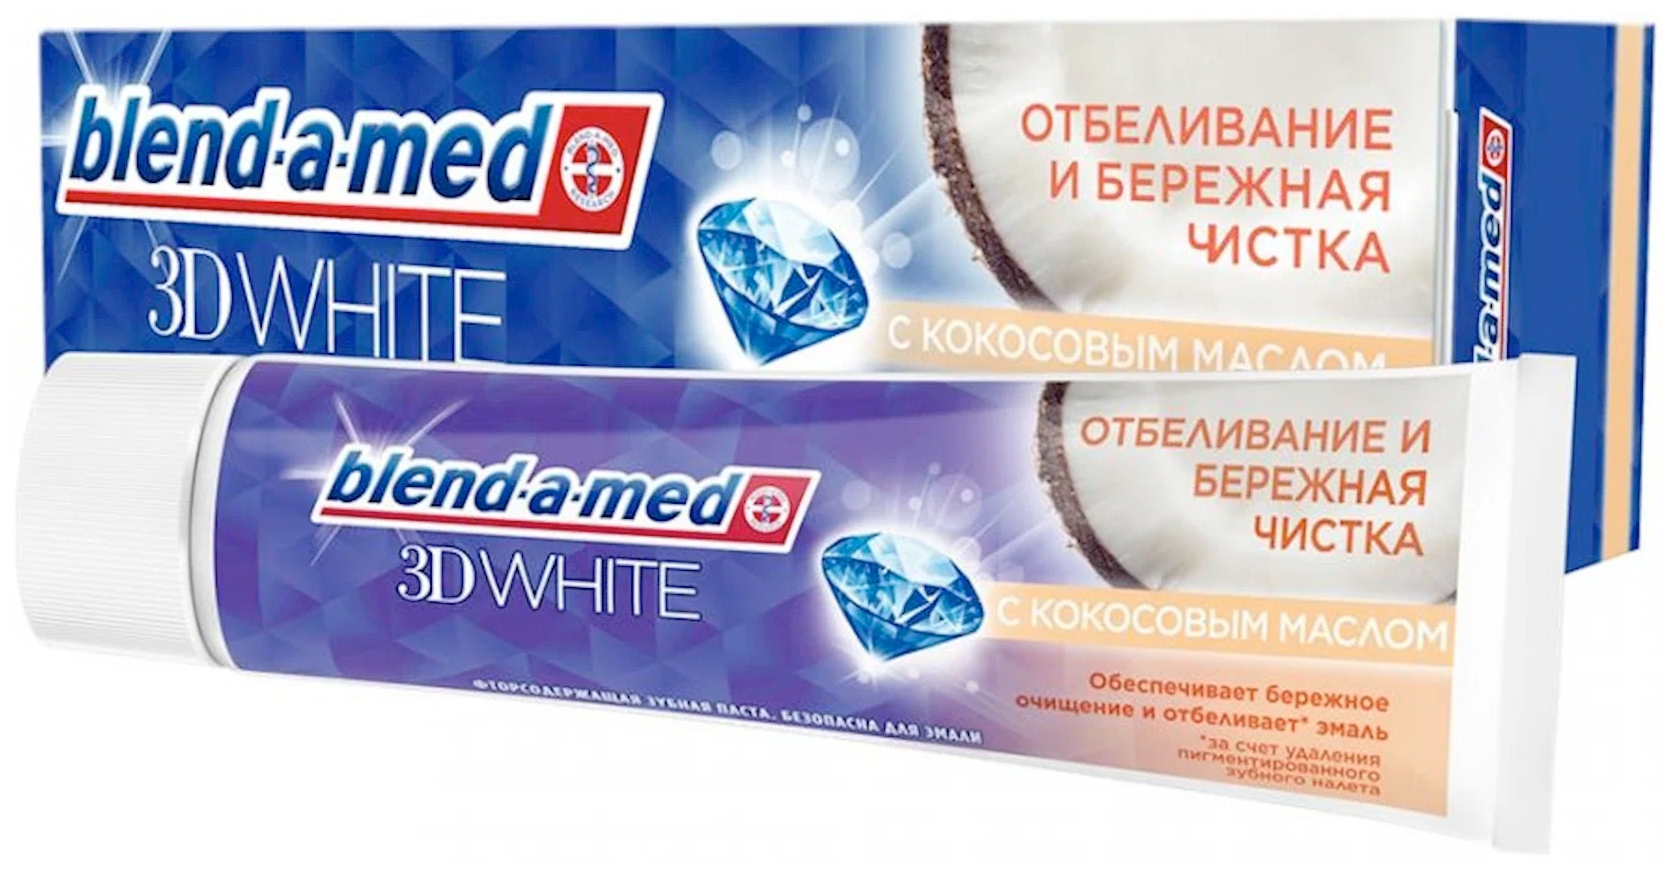 Зубная Паста Blend-a-med 3D White Бережная Чистка с кокосовым маслом, 100 мл.